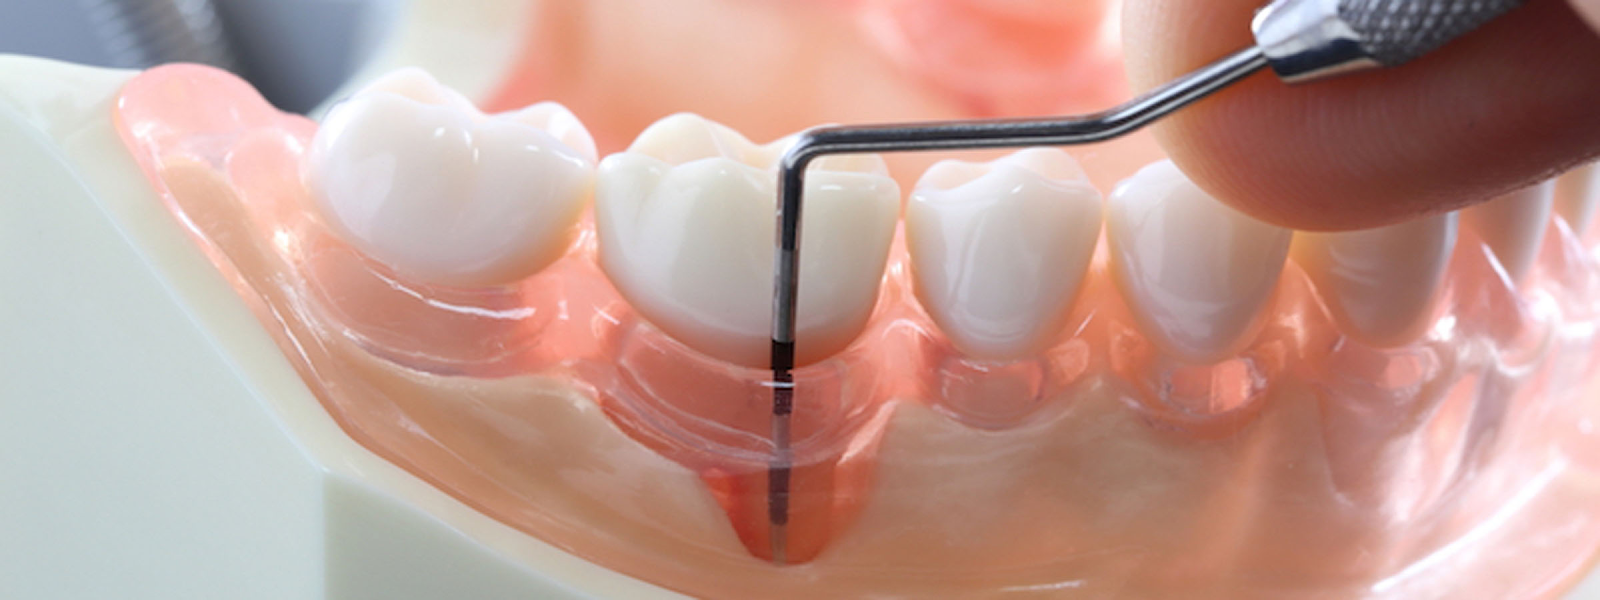 Как лечить пародонтит зуба?